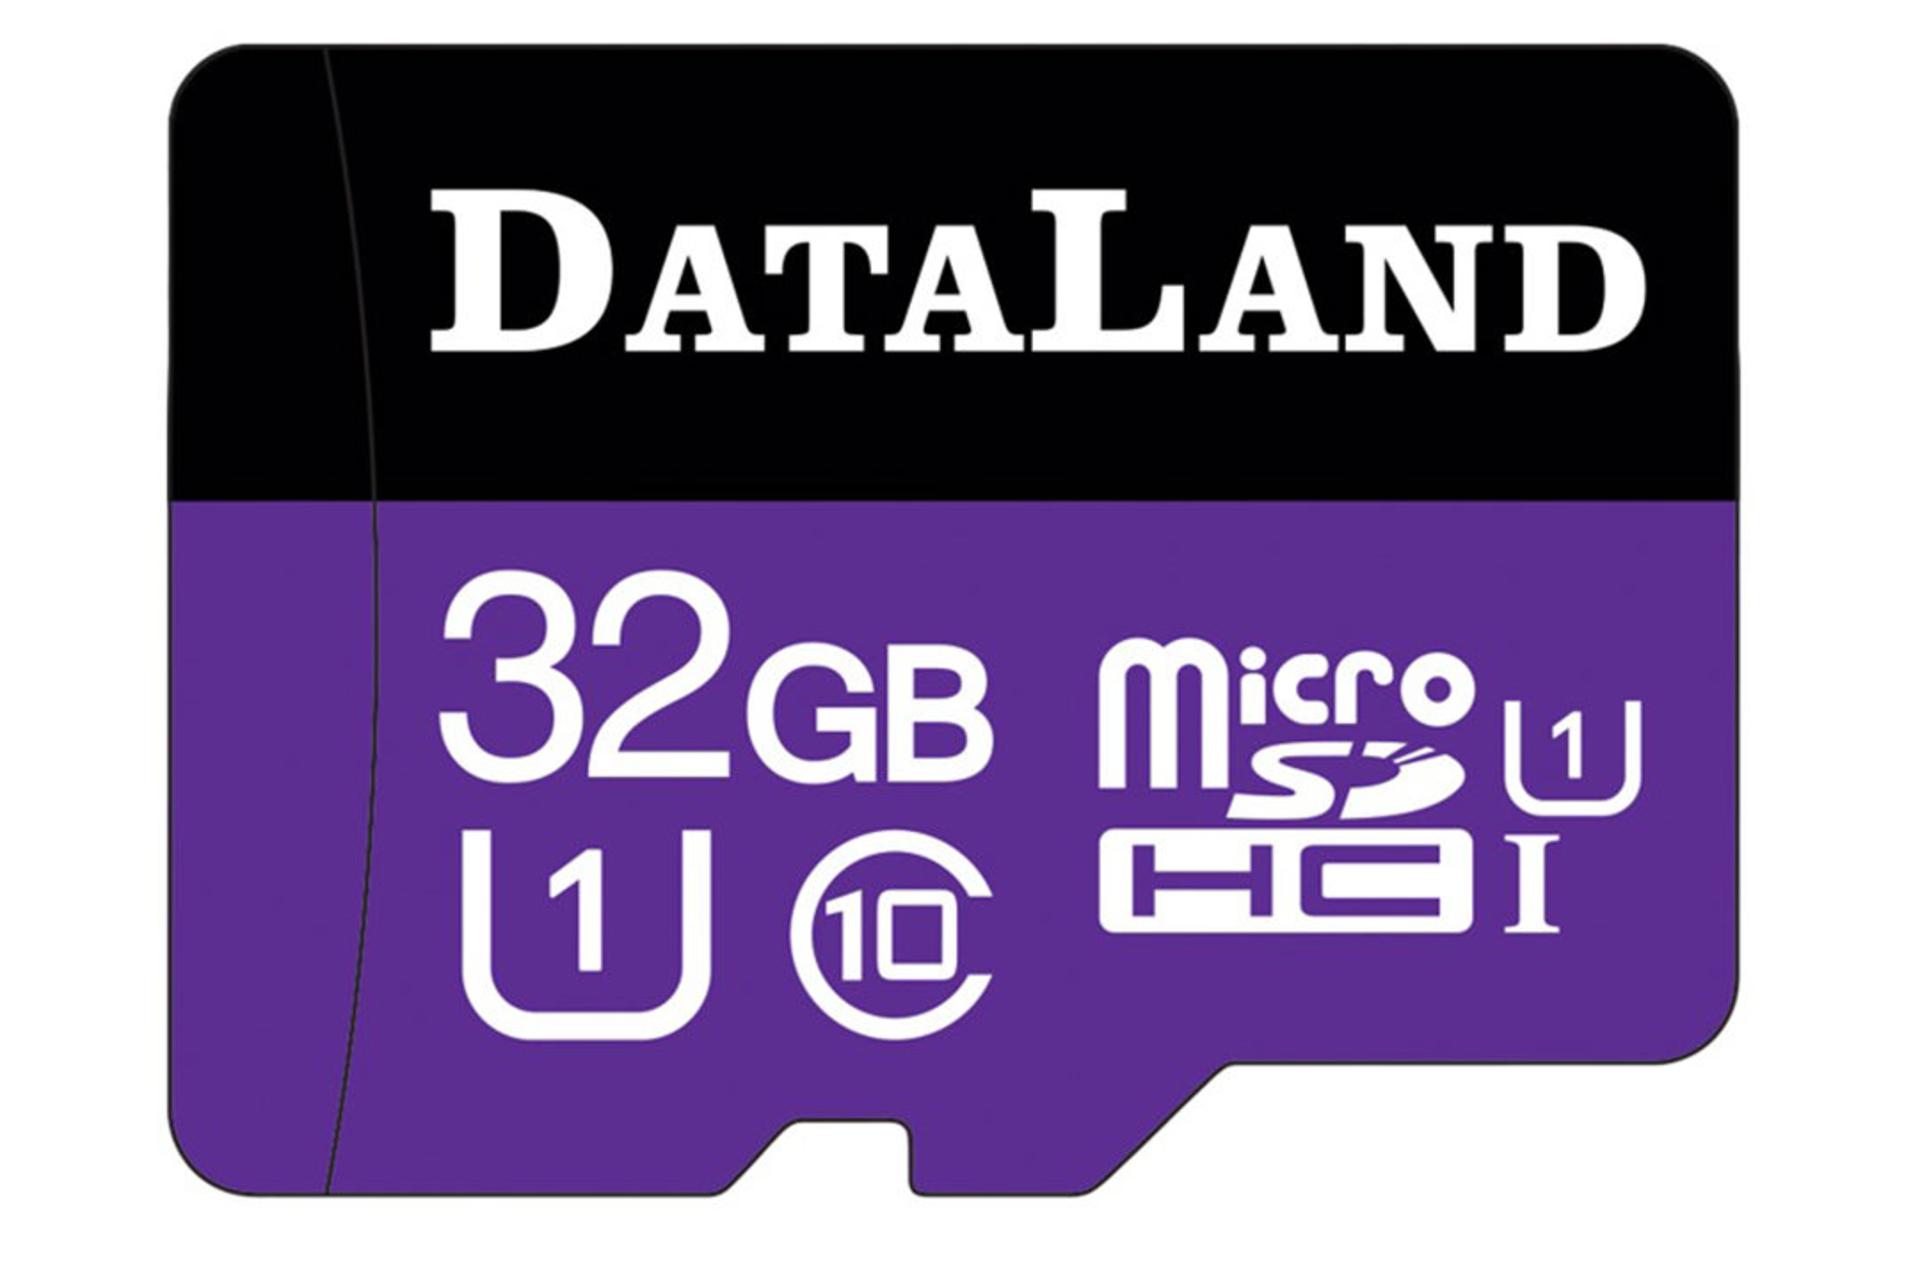 مرجع متخصصين ايران DataLand 533x microSDHC Class 10 UHS-I U1 32GB